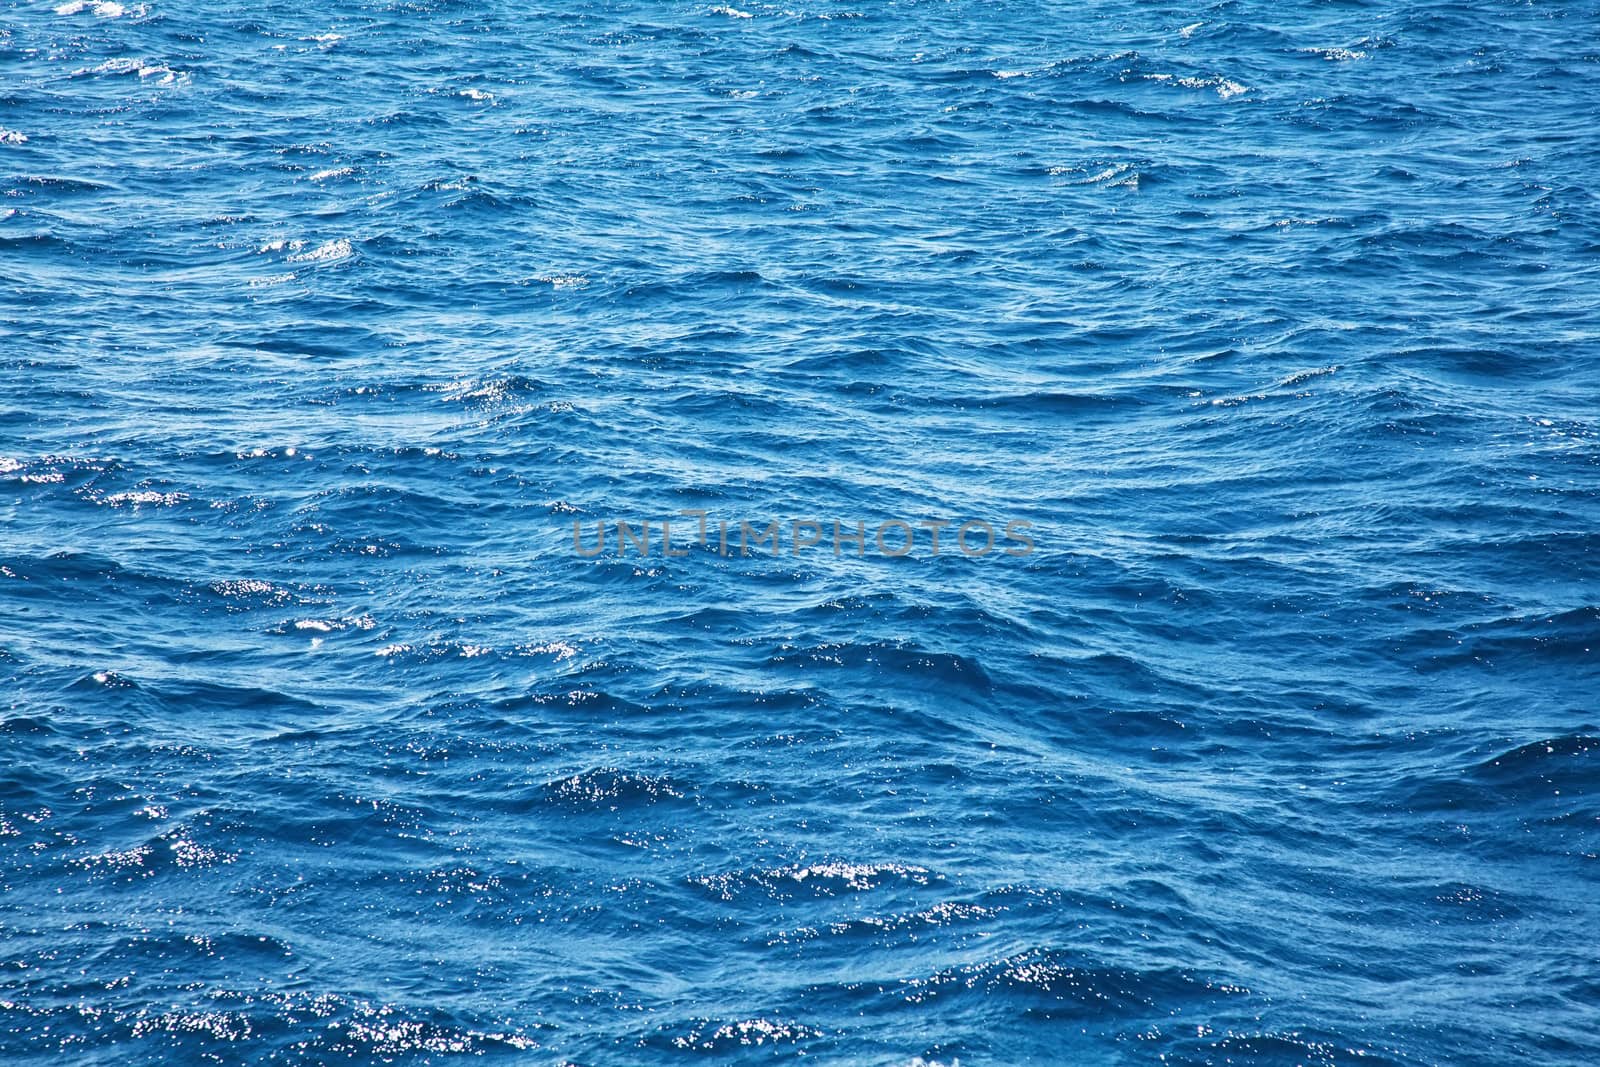 Deep blue ocean water with waves